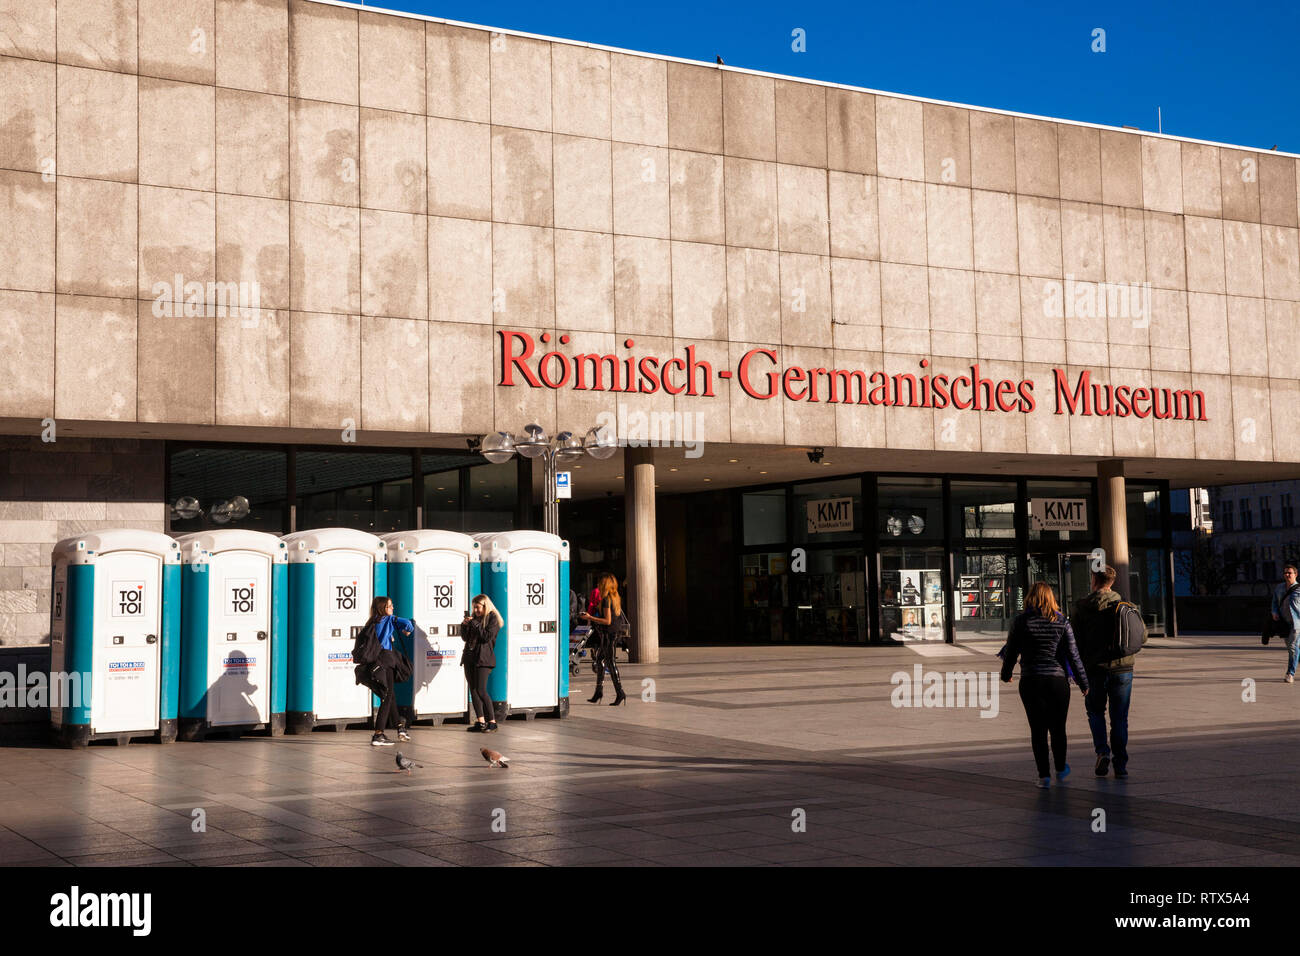 I bagni portatili davanti al Museo Romano-Germanico al Roncalli square, Colonia, Germania. Dixi Toiletten vor dem Roemisch-Germanischen Museum Foto Stock